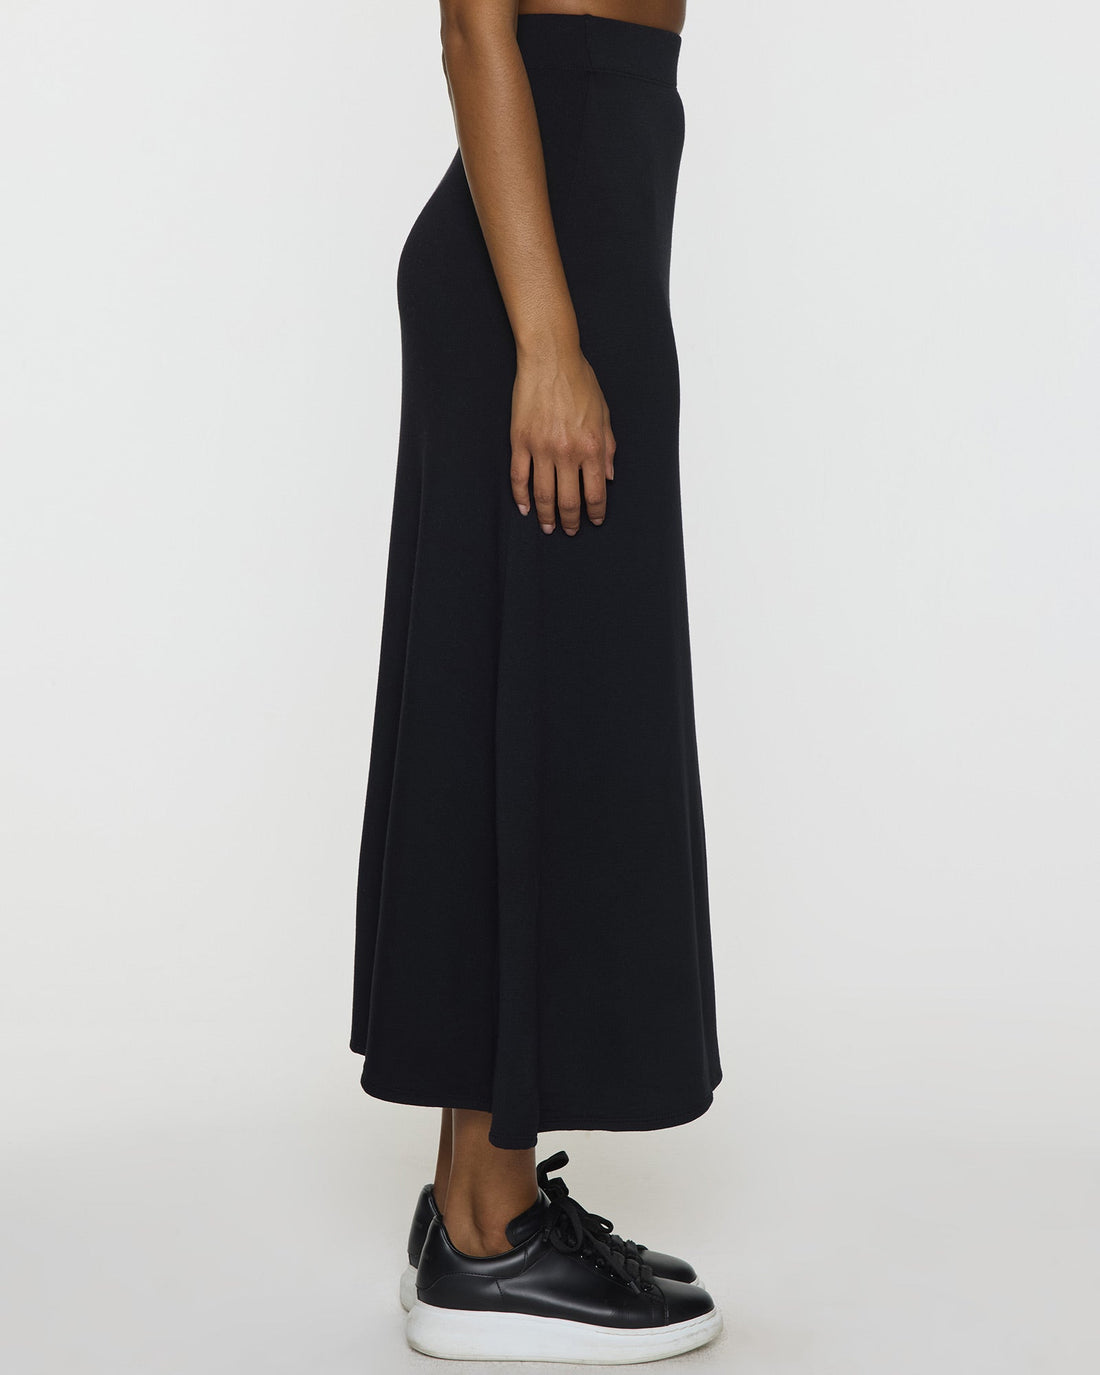 The Long A-Line Skirt – Bleusalt